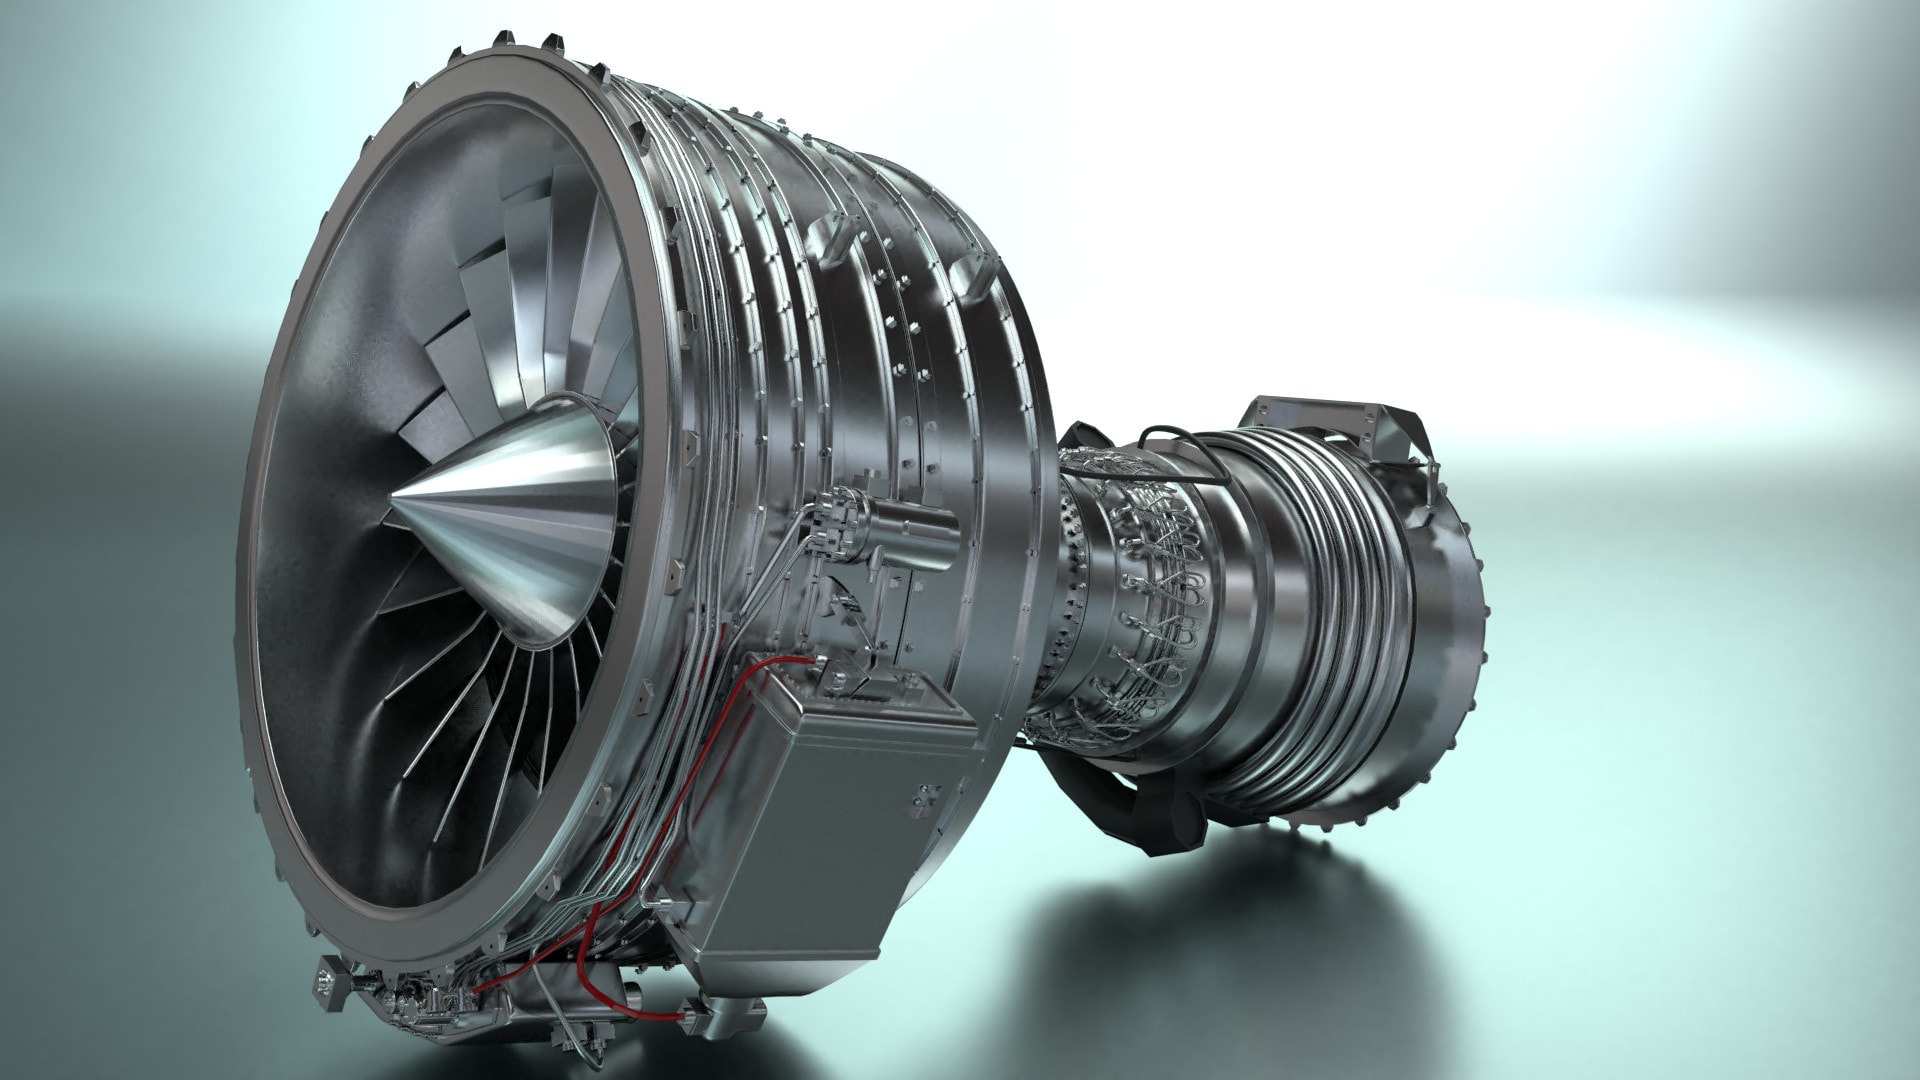 Creating a Jet Engine in Blender